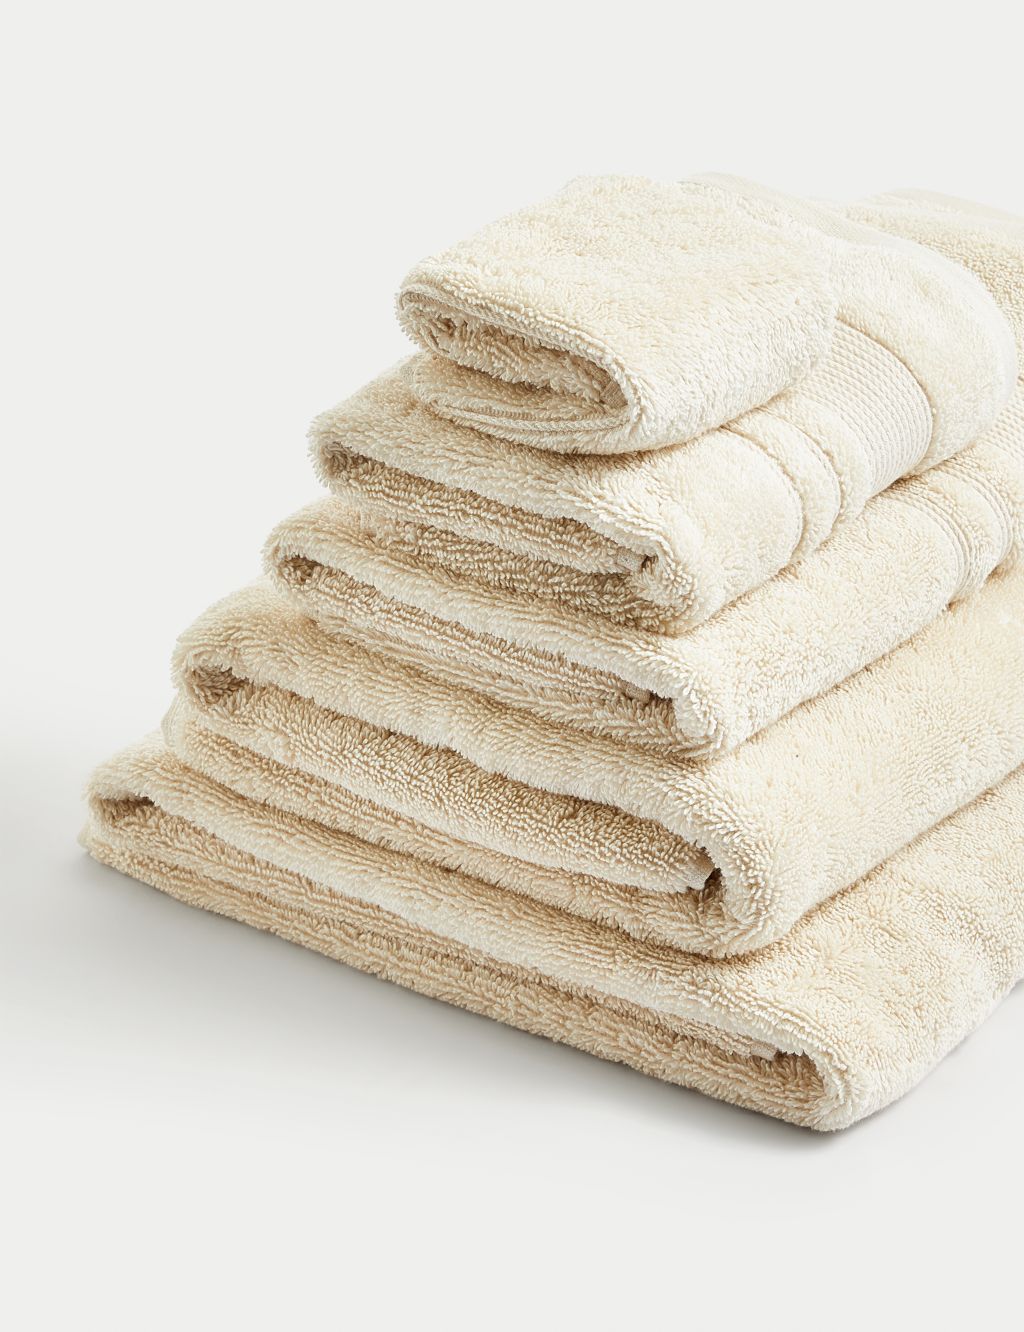 Super Plush Pure Cotton Towel image 2